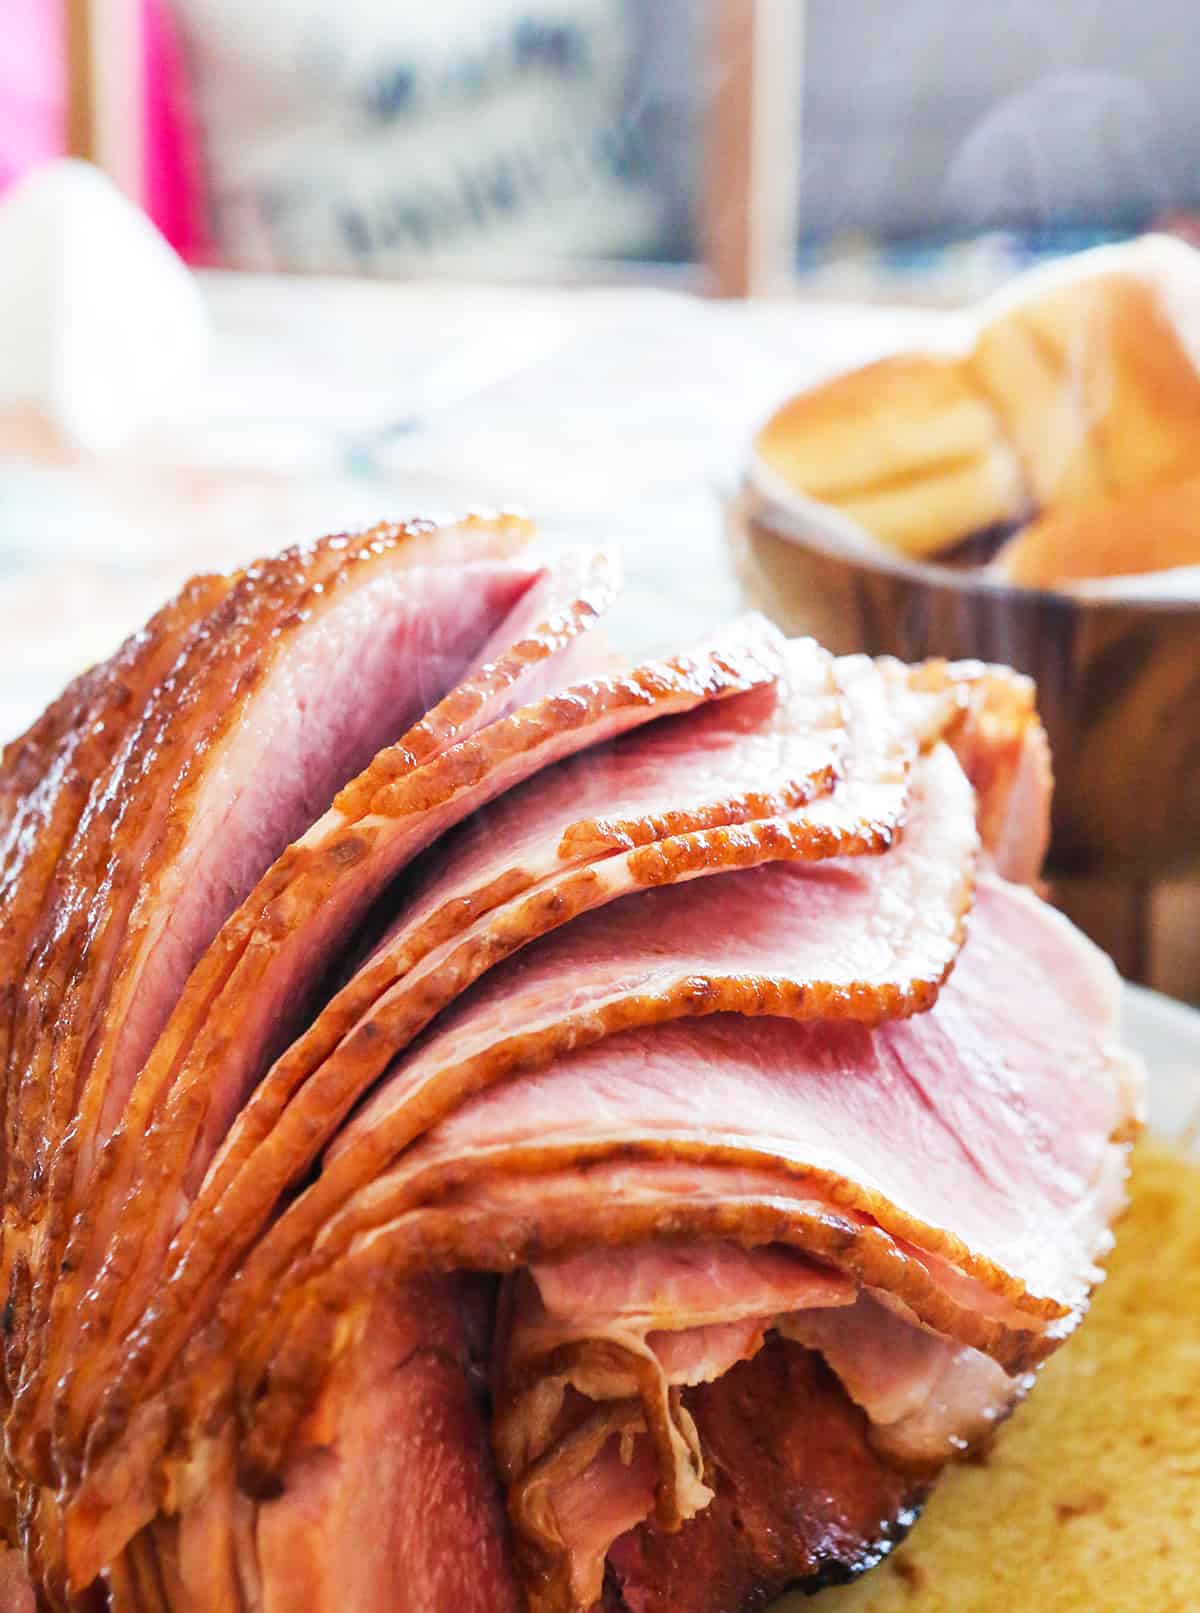 Sliced whole ham on a serving platter.